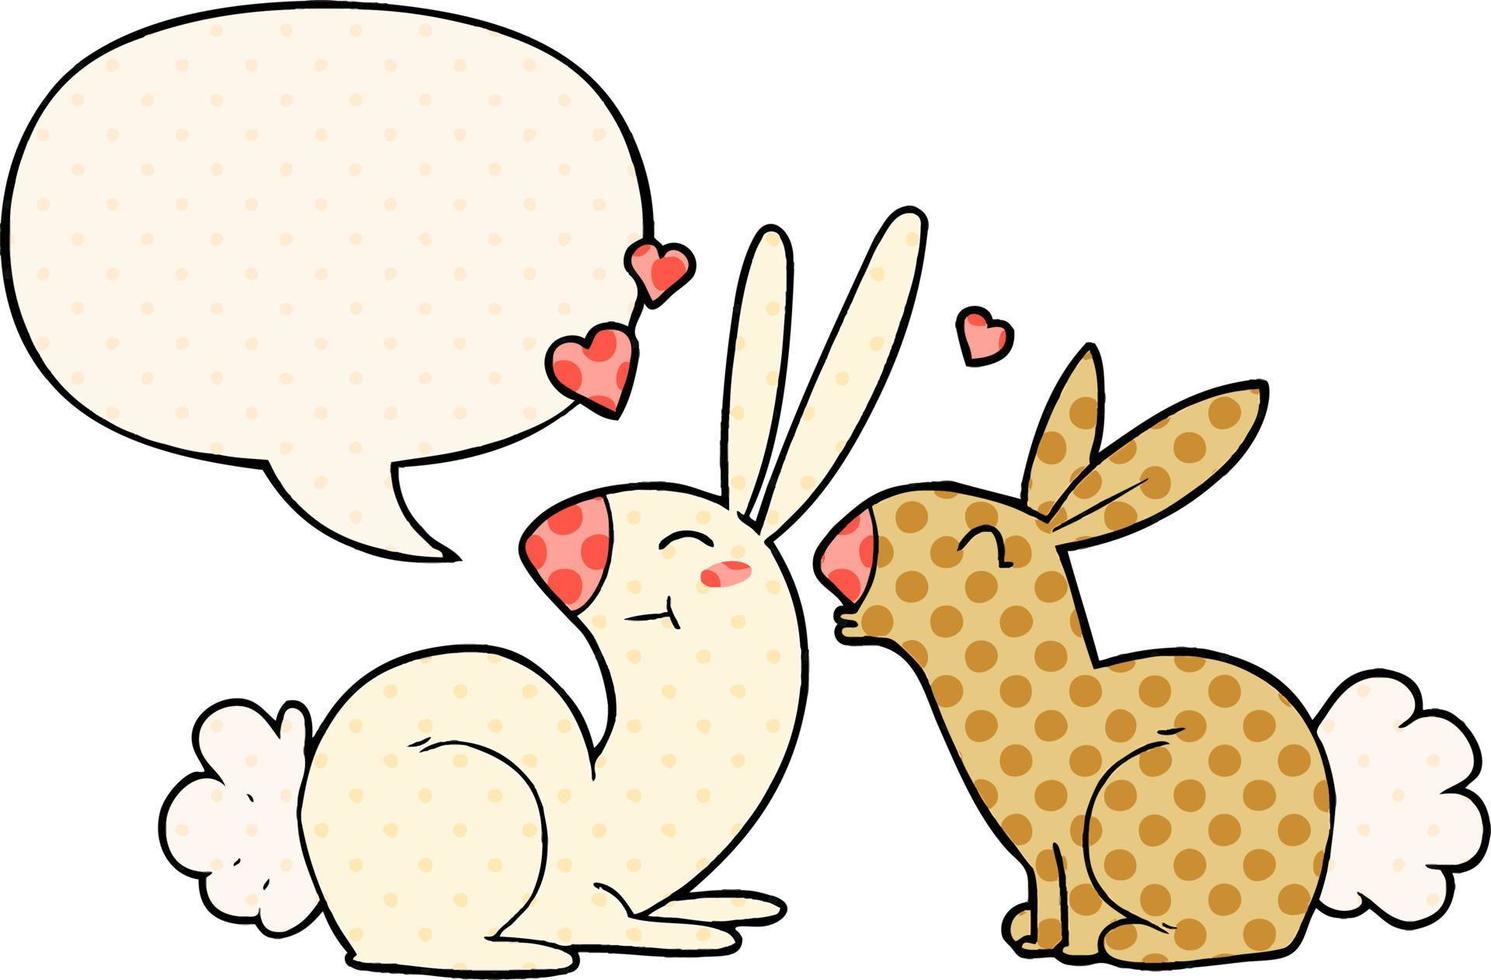 coelhos de desenho animado apaixonados e bolha de fala no estilo de quadrinhos vetor